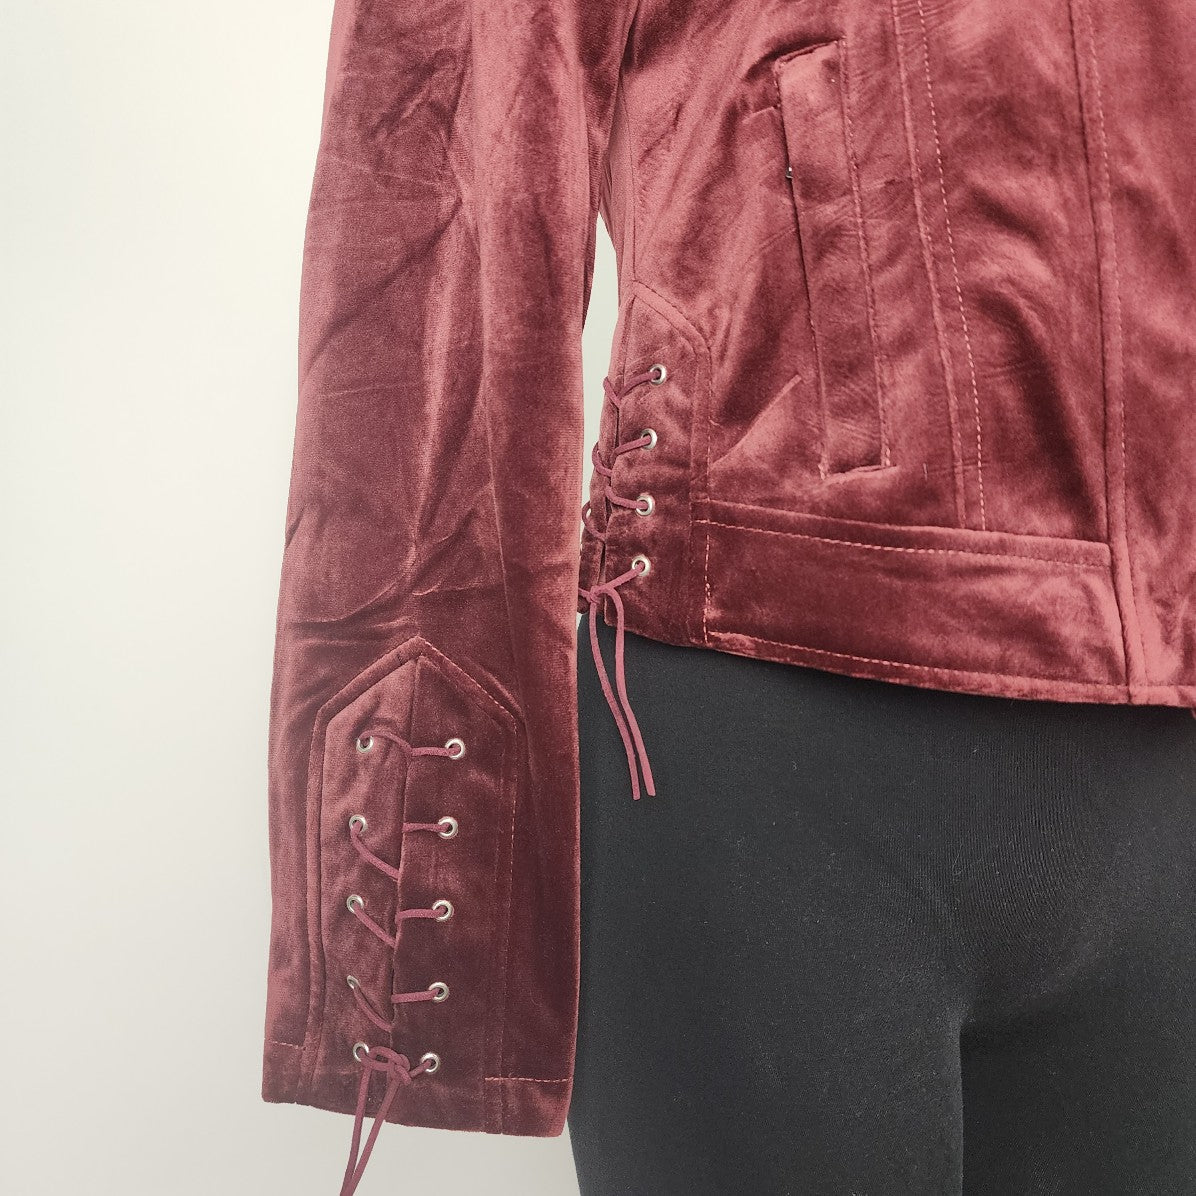 Ashley Burgundy Velvet Zip Up Moto Jacket Size M